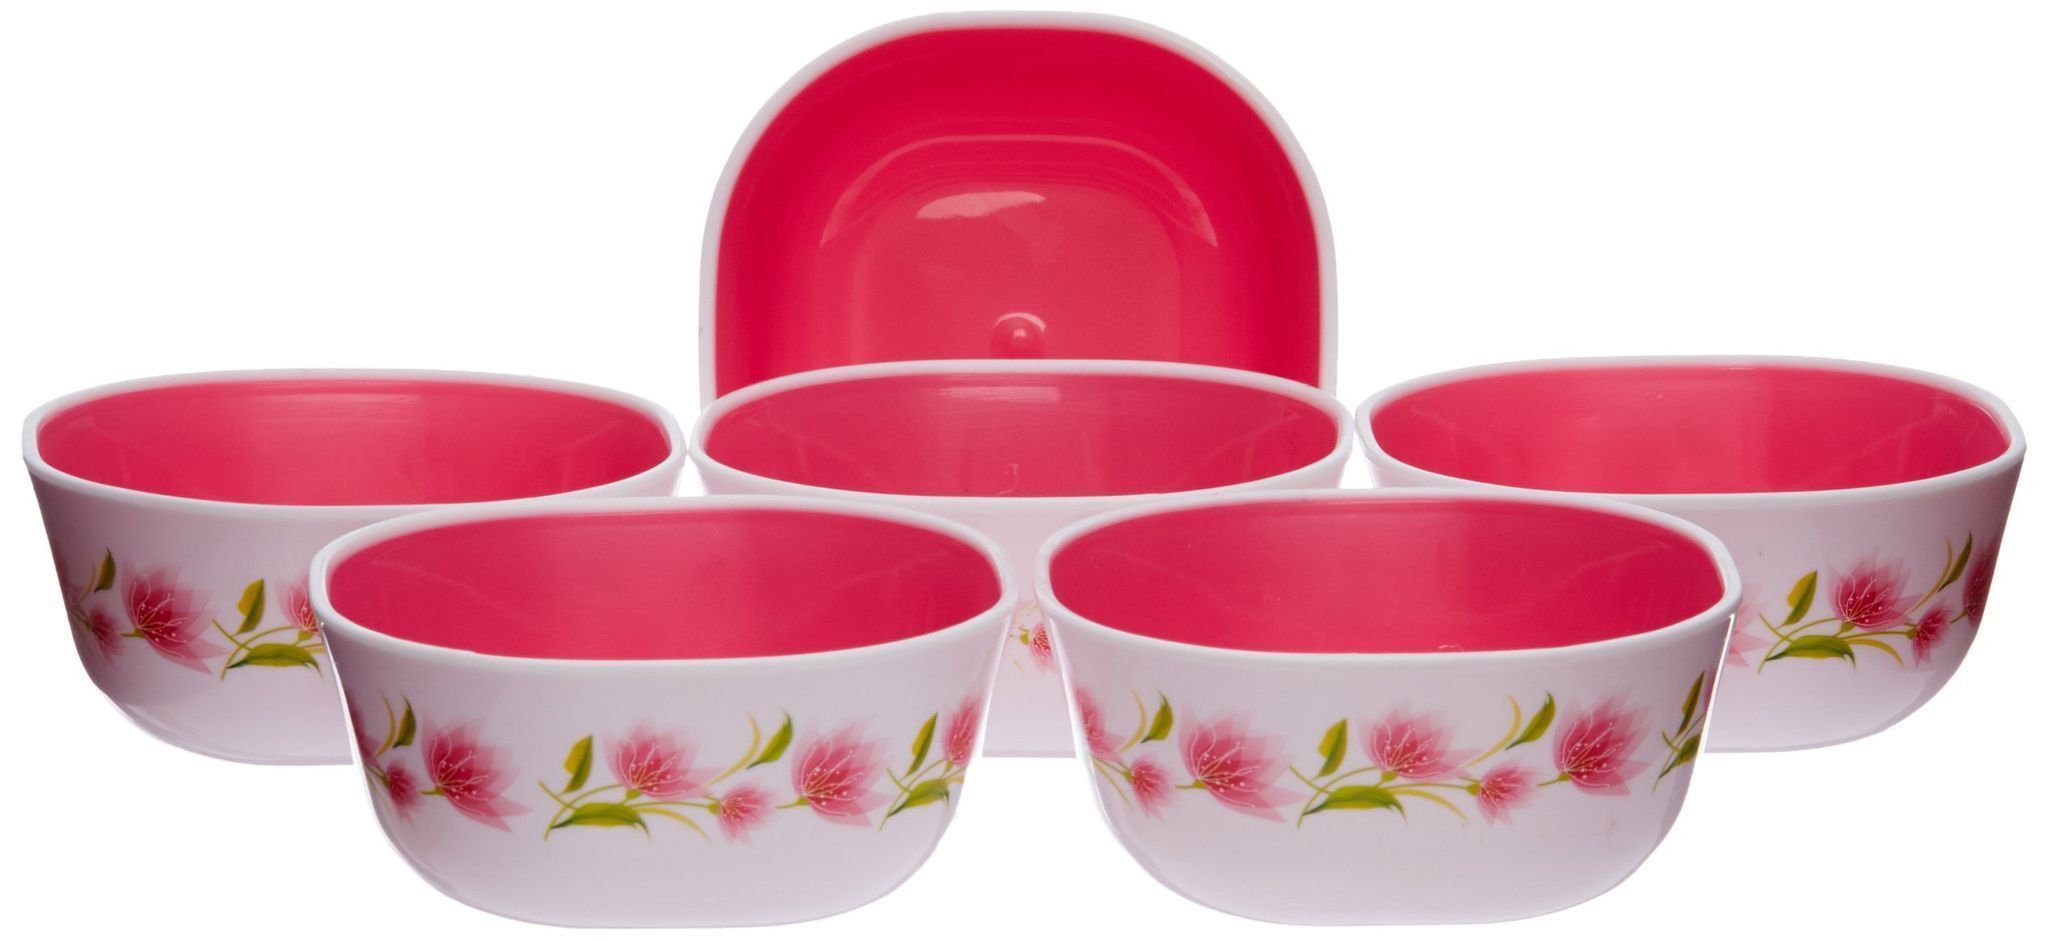 Nayasa Microwave��� Square Bowl DLX Set, Set of 6, Pink